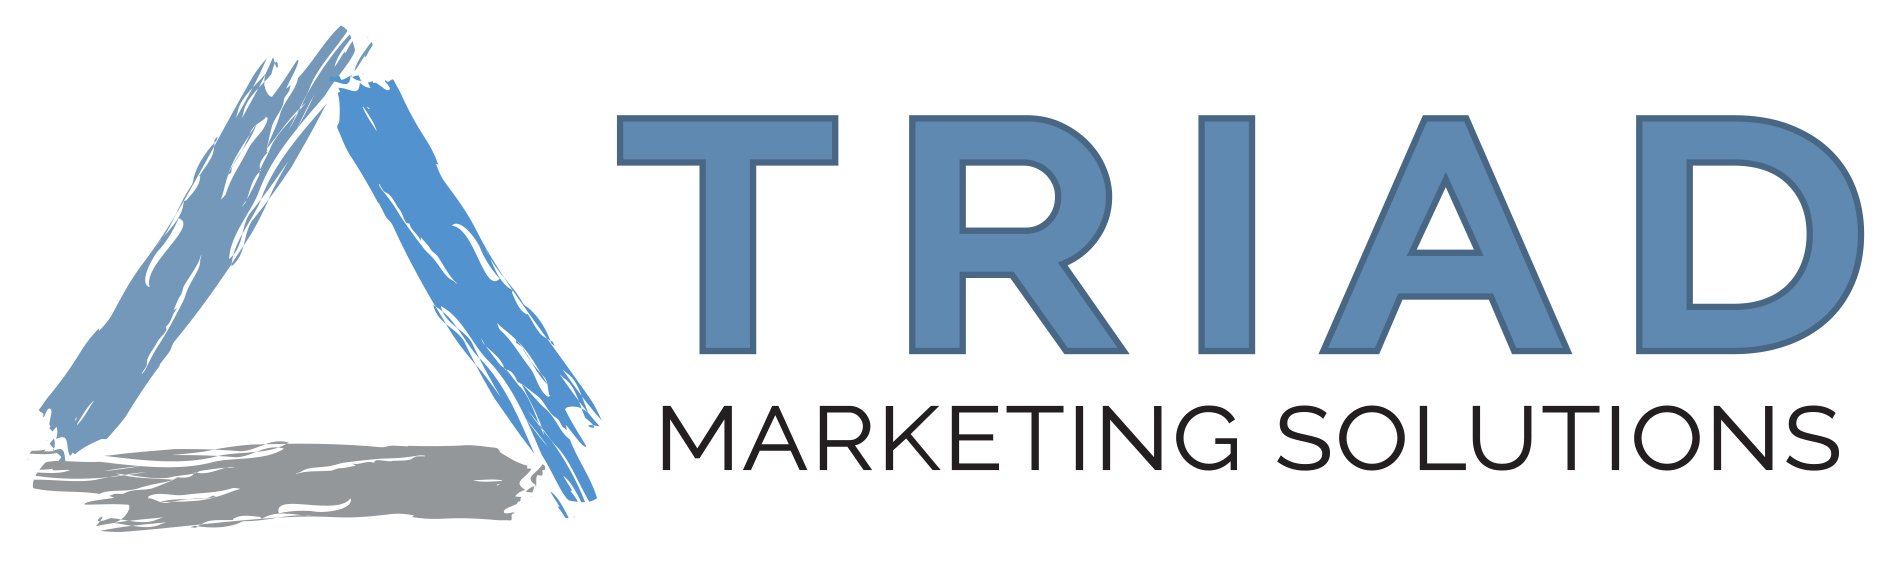 Triad Marketing Solutions